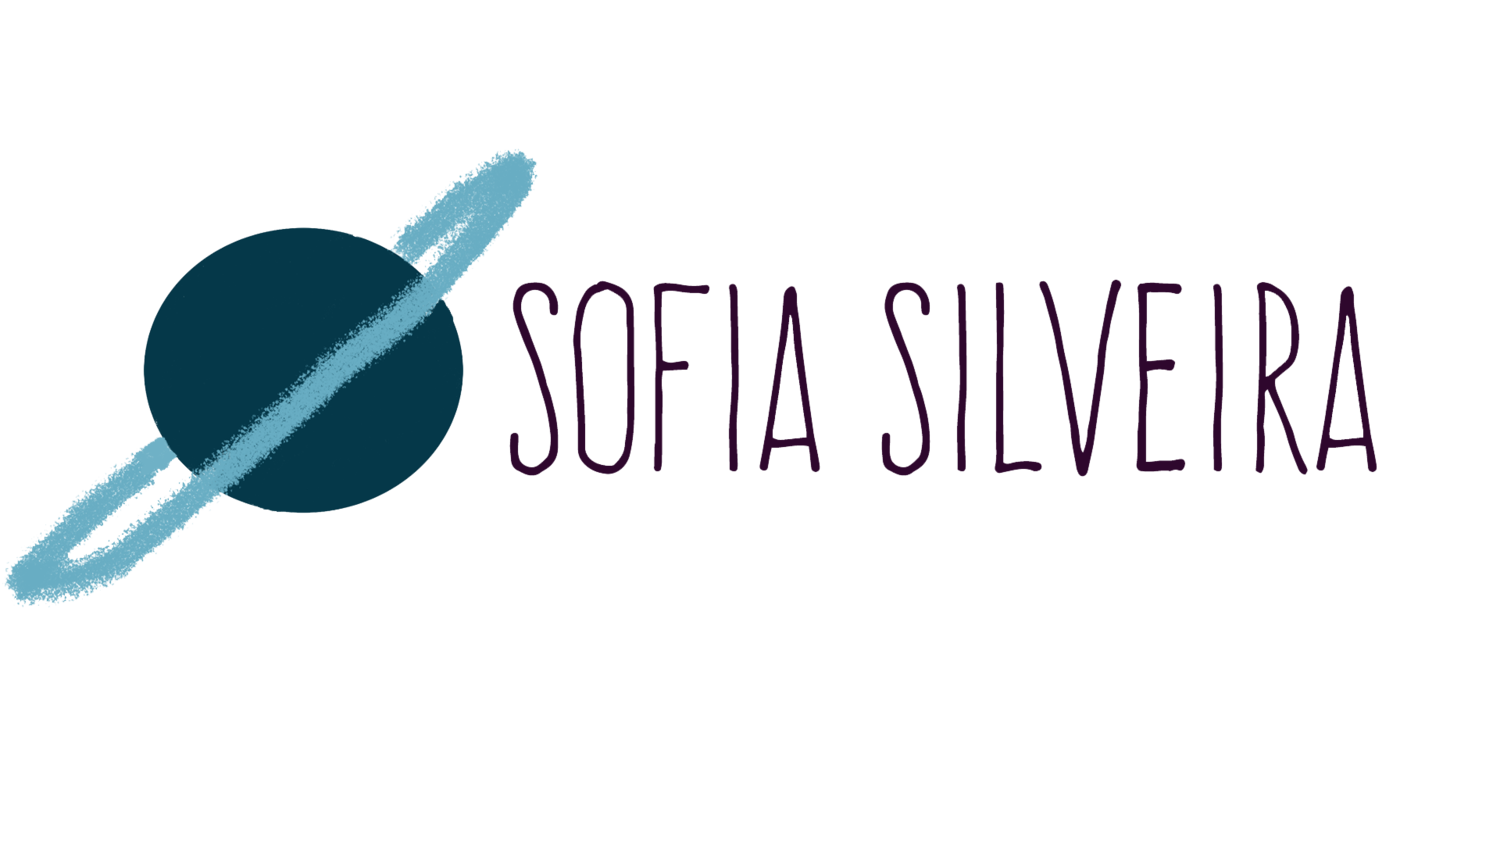 Sofia Silveira